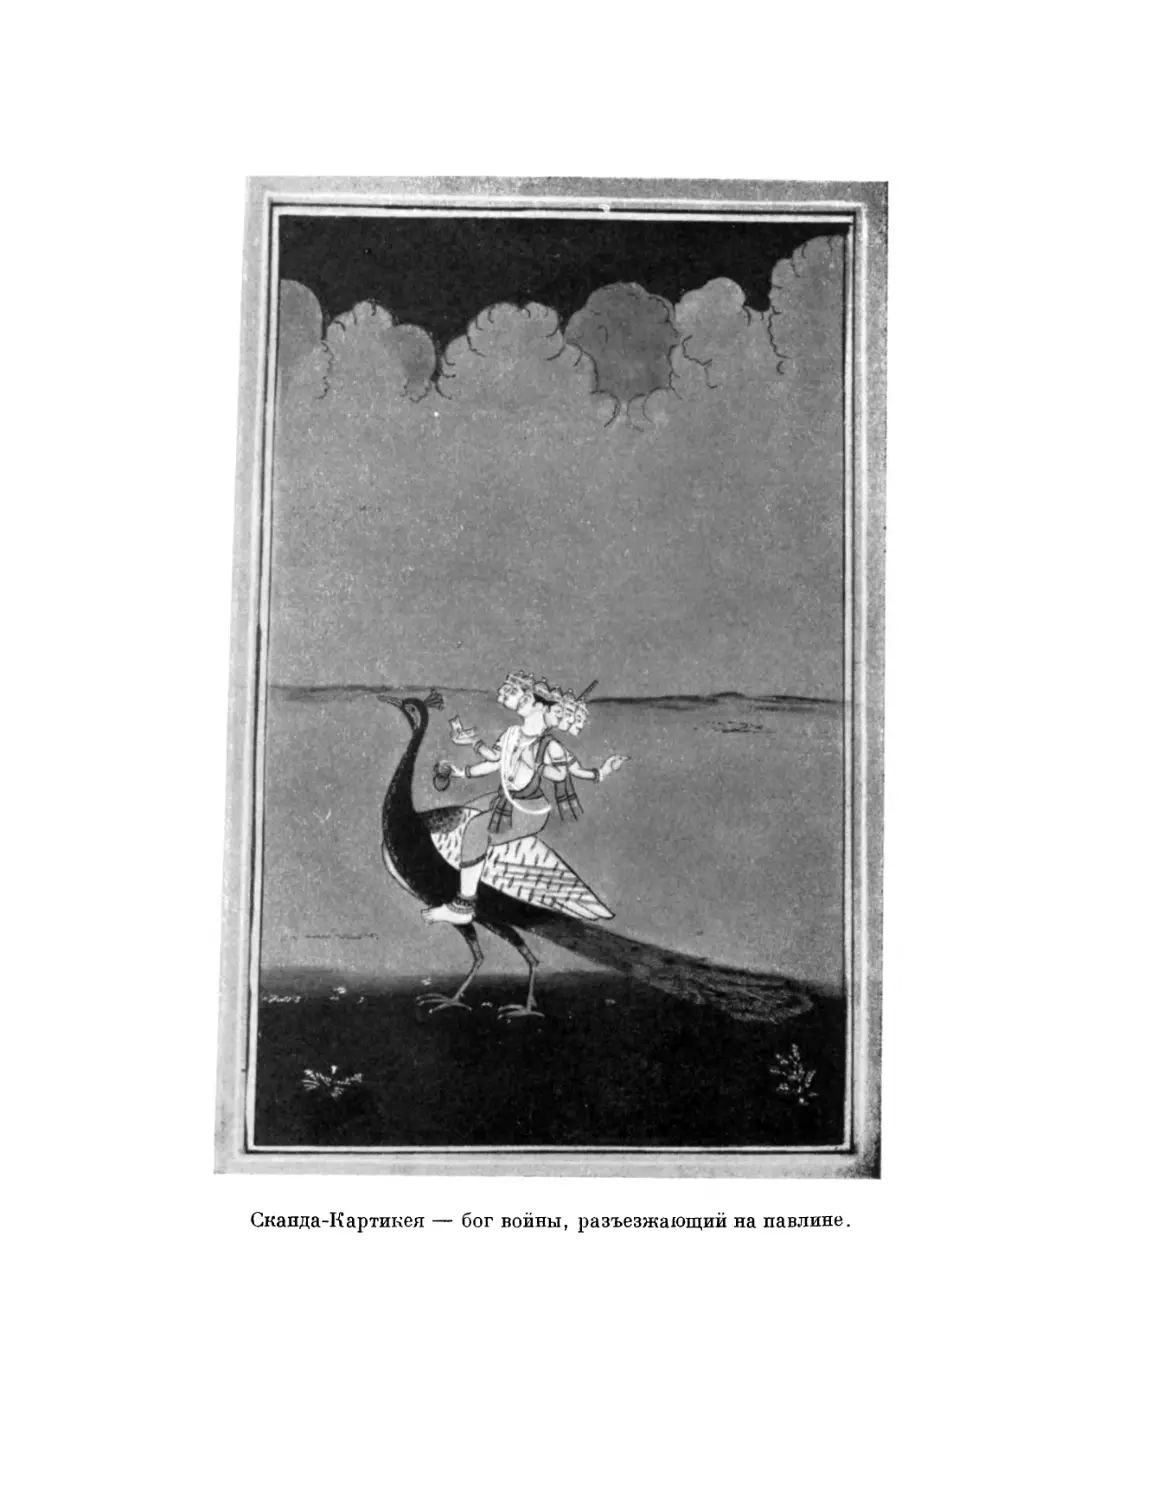 Вклейка. Сканда-Картикея — бог войны, разъезжающий на павлине